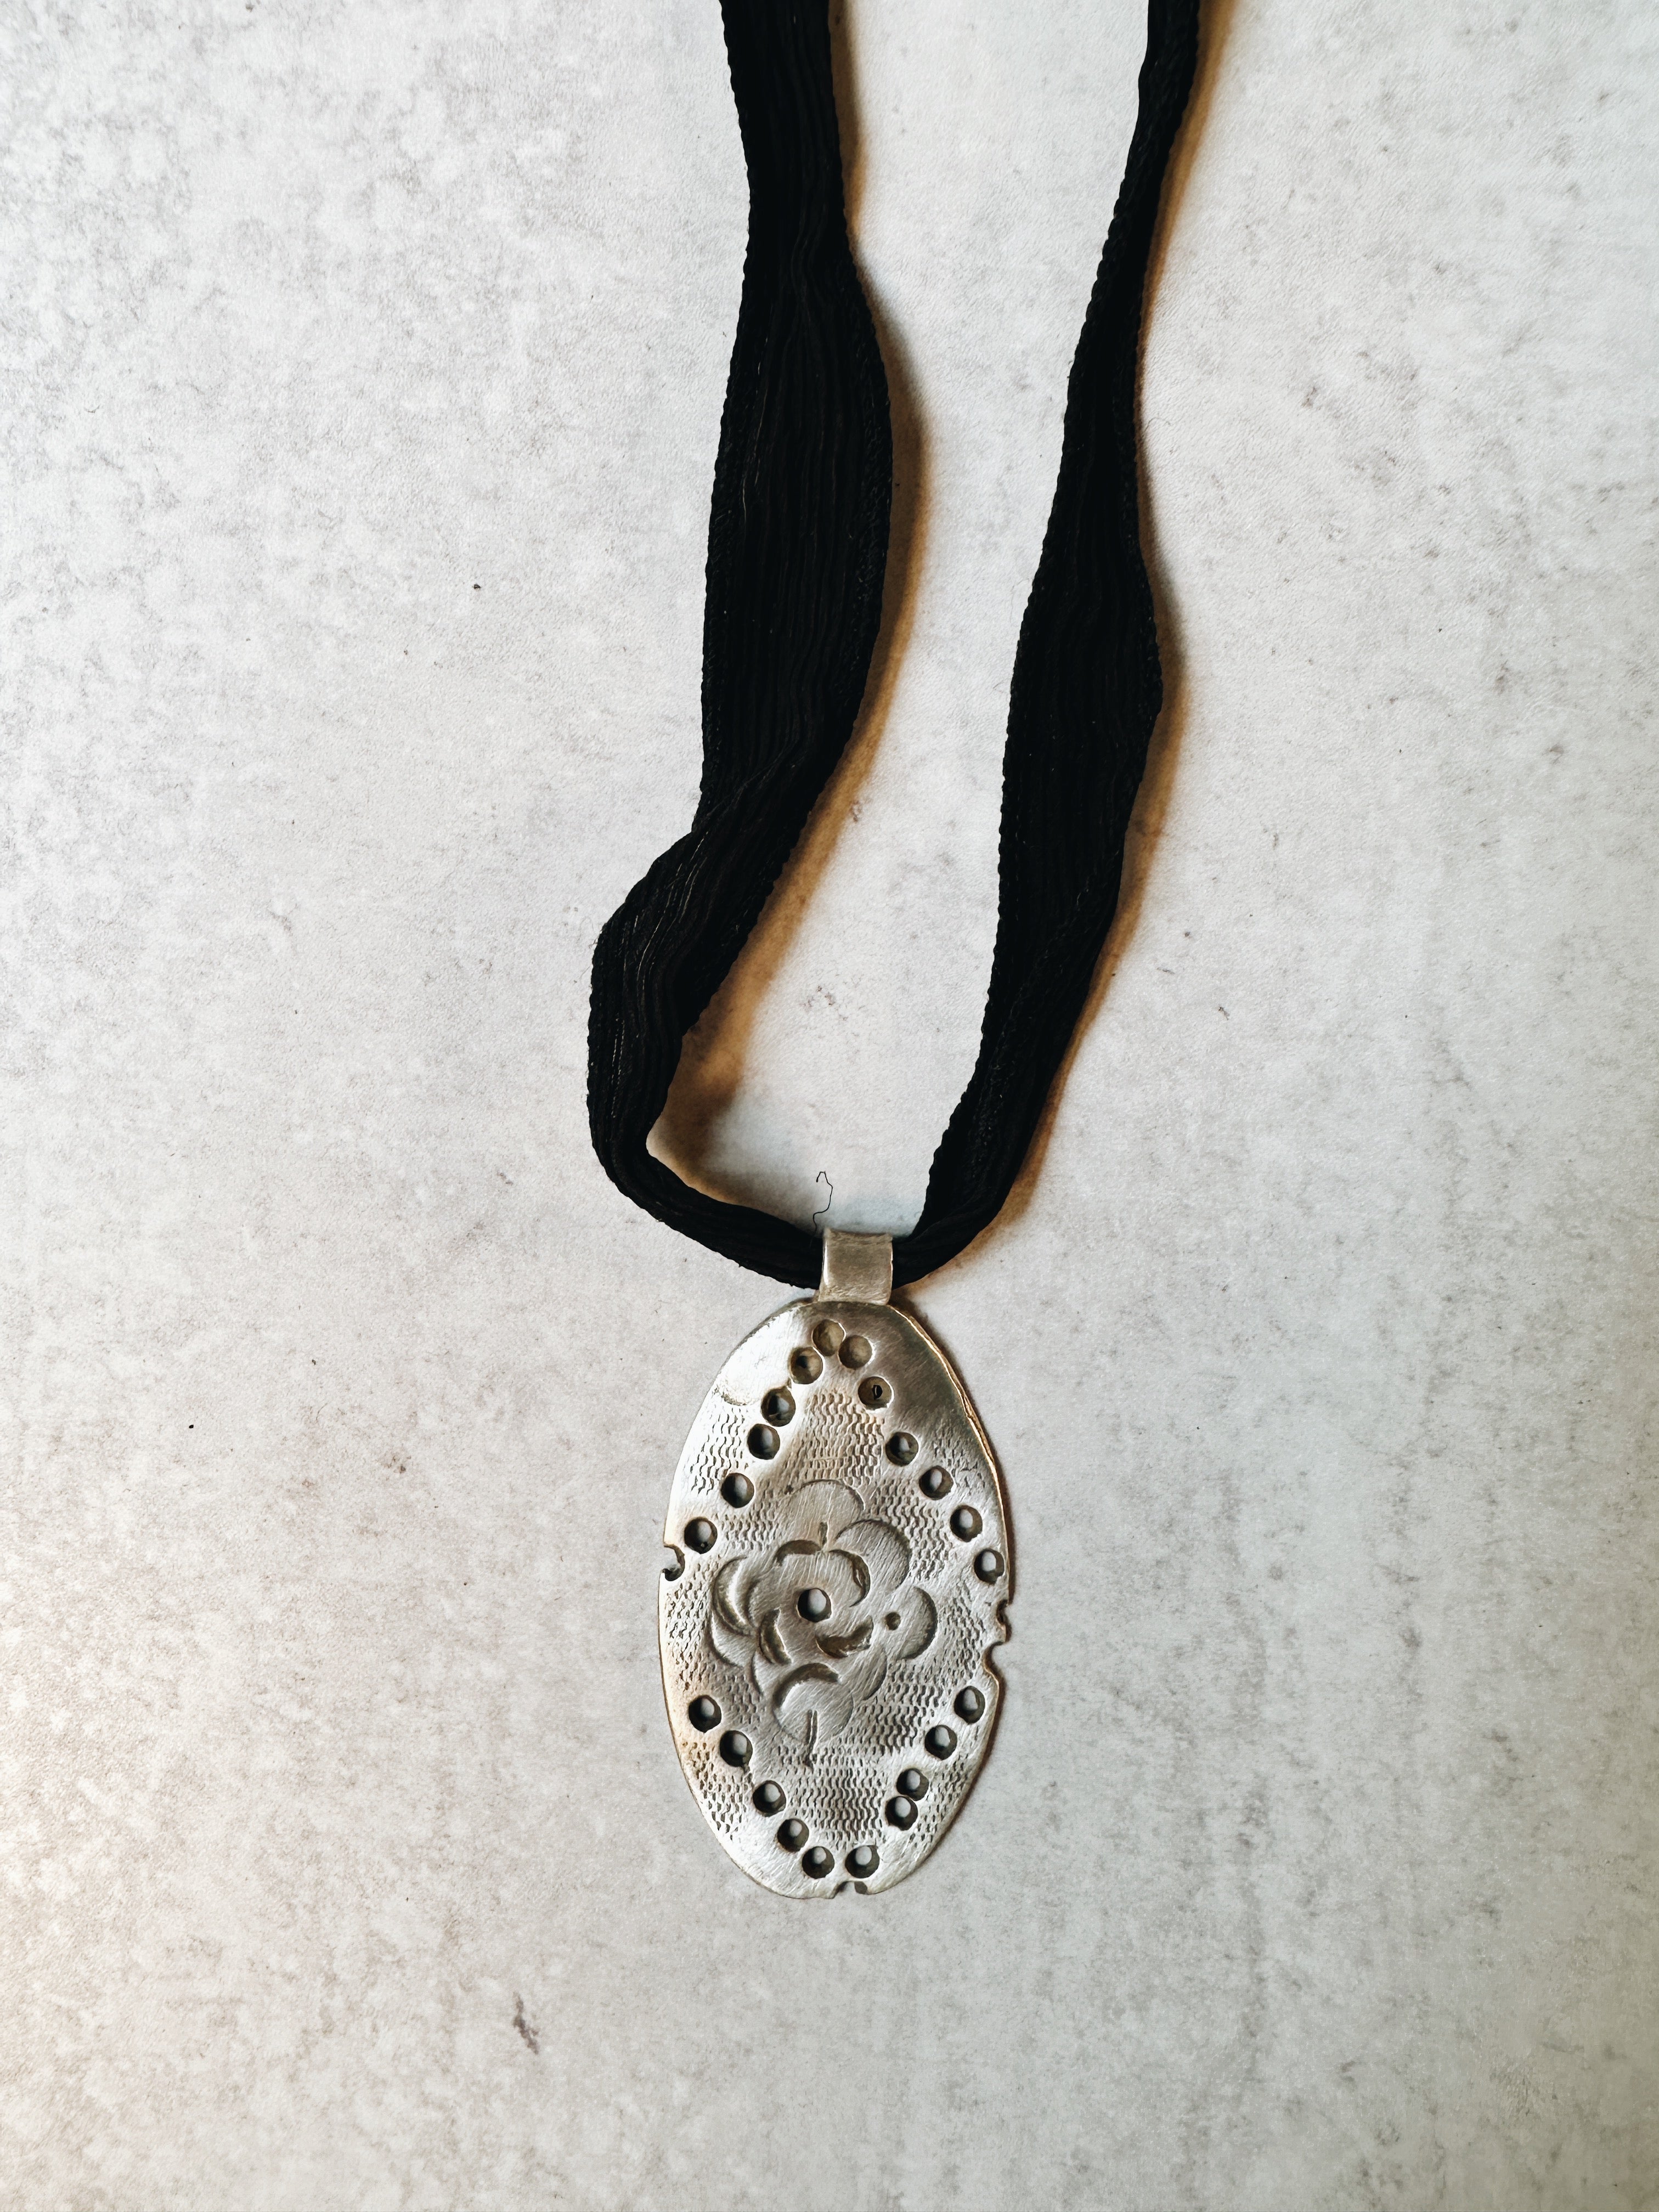 Western Floral Pendant Necklace from Jester Swink - Jester Swink